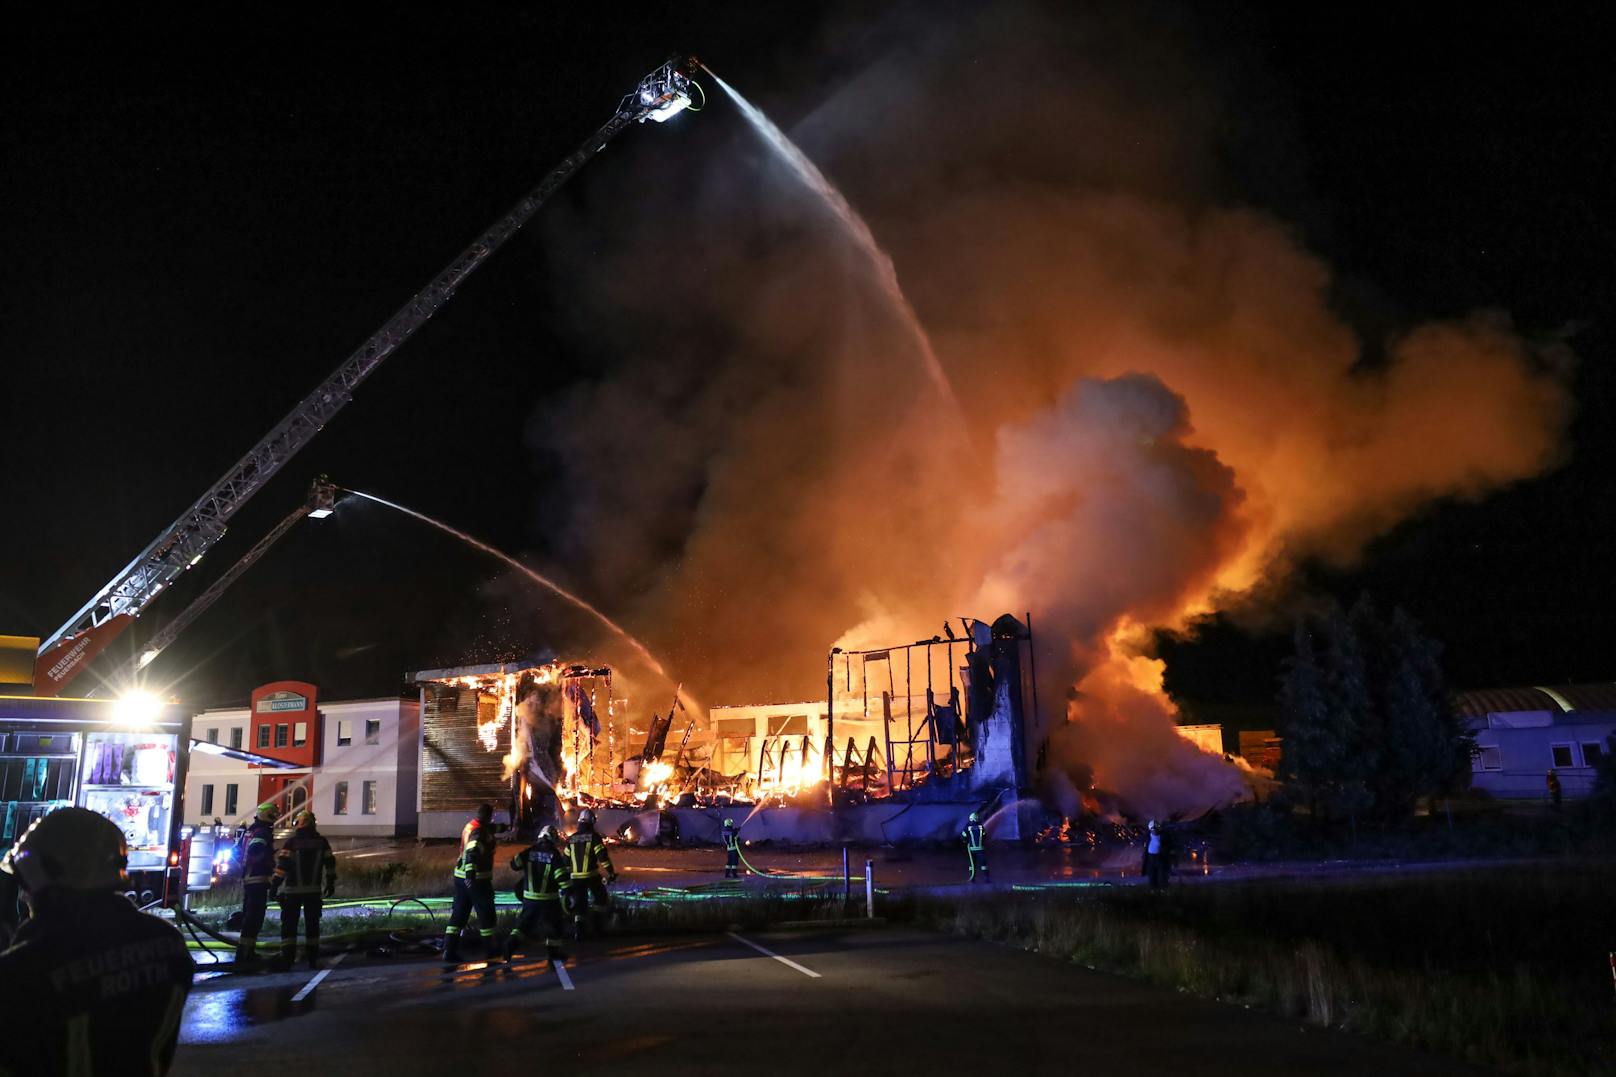 23 Feuerwehren standen am späten Dienstagabend und in der Nacht auf Mittwoch bei einem Großbrand eines Unternehmens im Gemeindegebiet von Taufkirchen an der Trattnach (Bezirk Grieskirchen) im Einsatz.